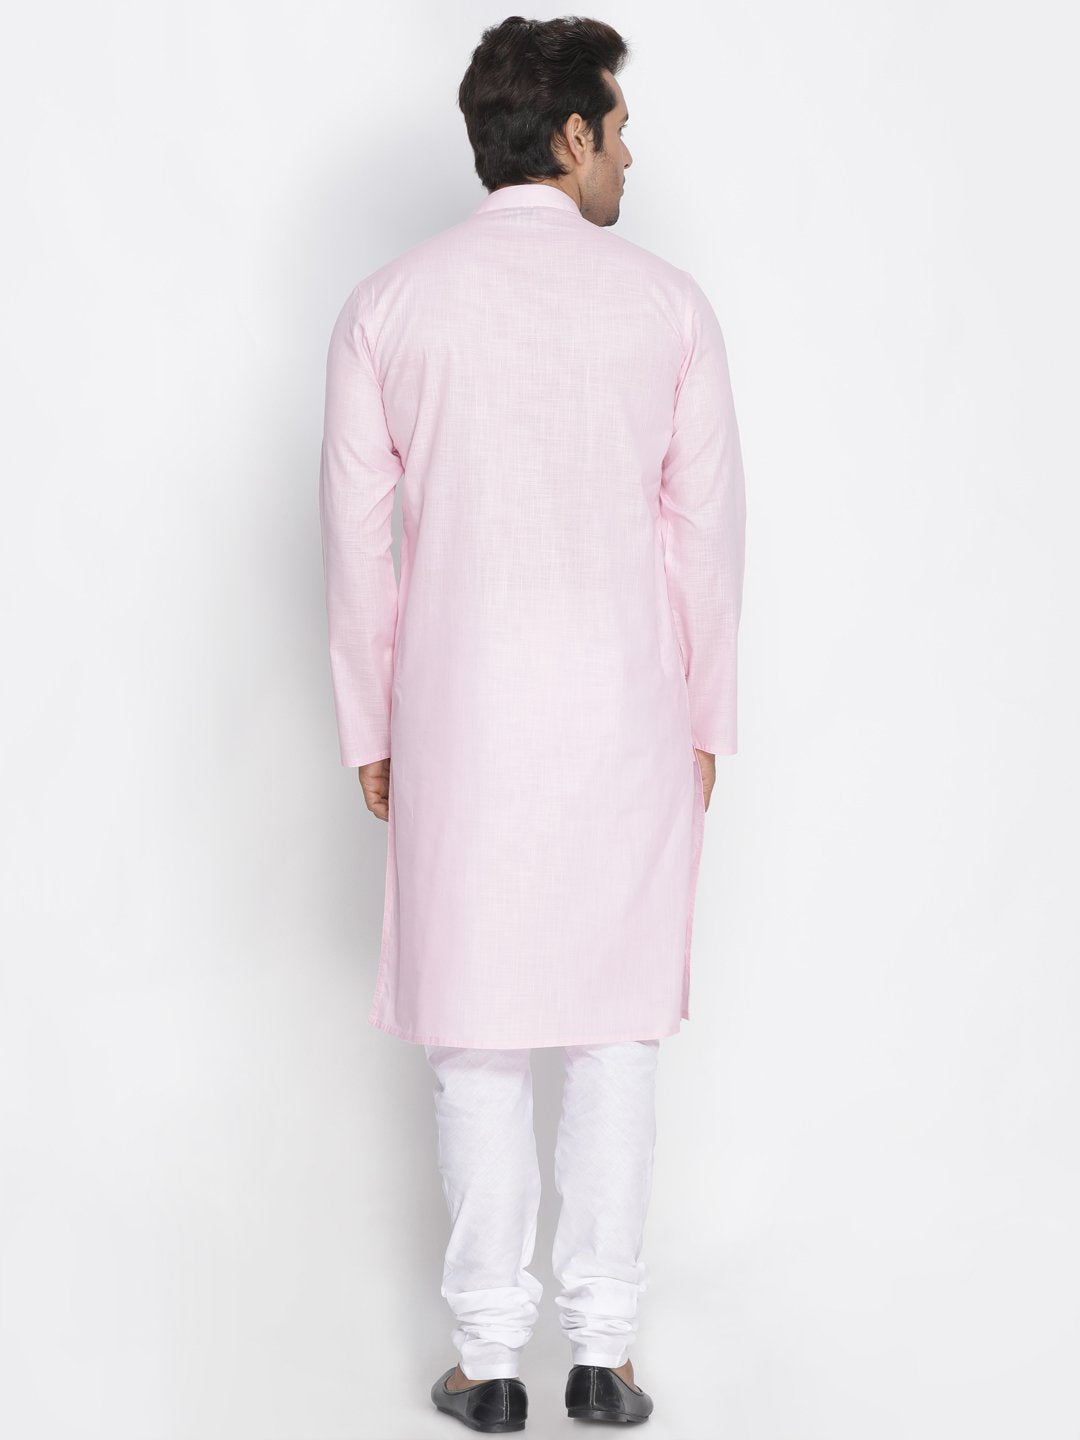 Men's Pink Cotton Kurta and Pyjama Set - Vastramay